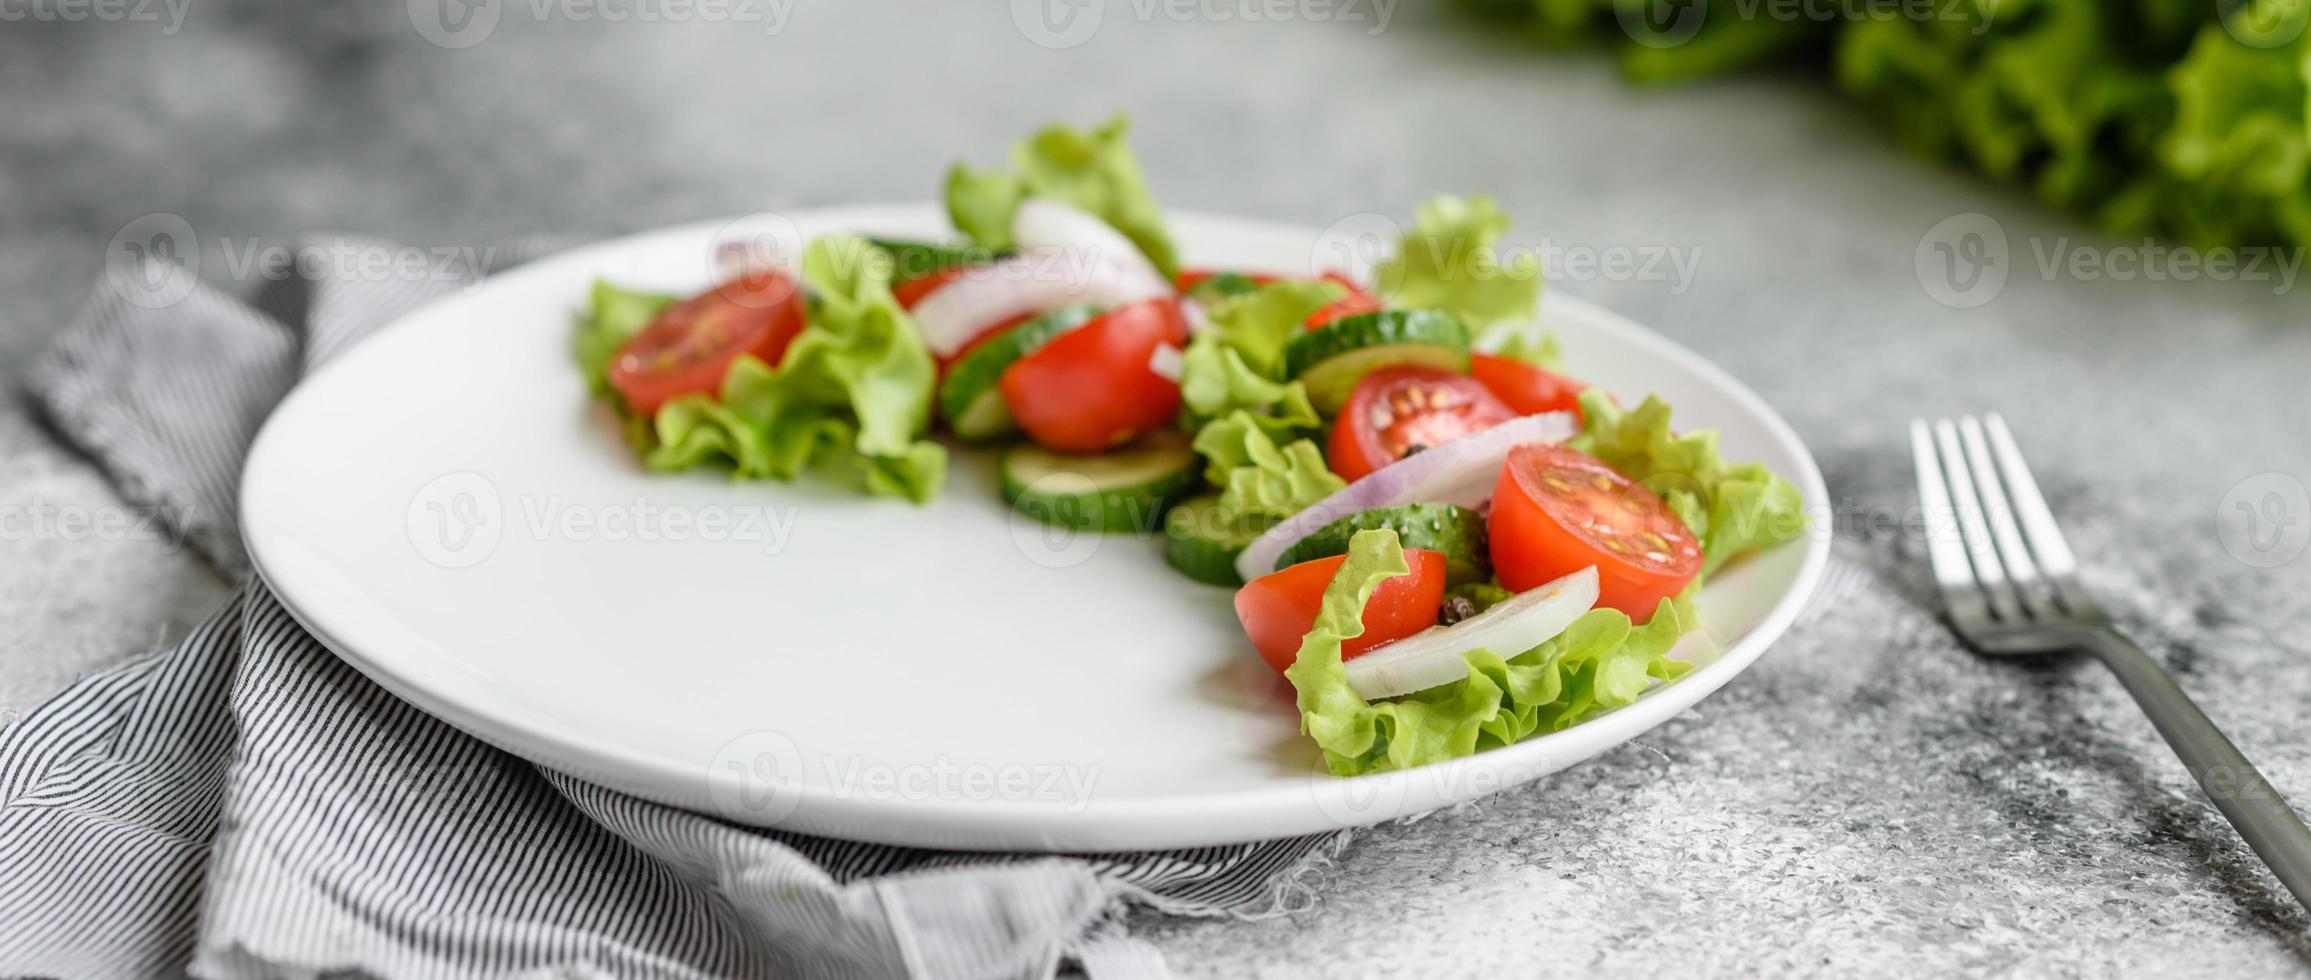 frischer leckerer Salat mit Gemüse foto